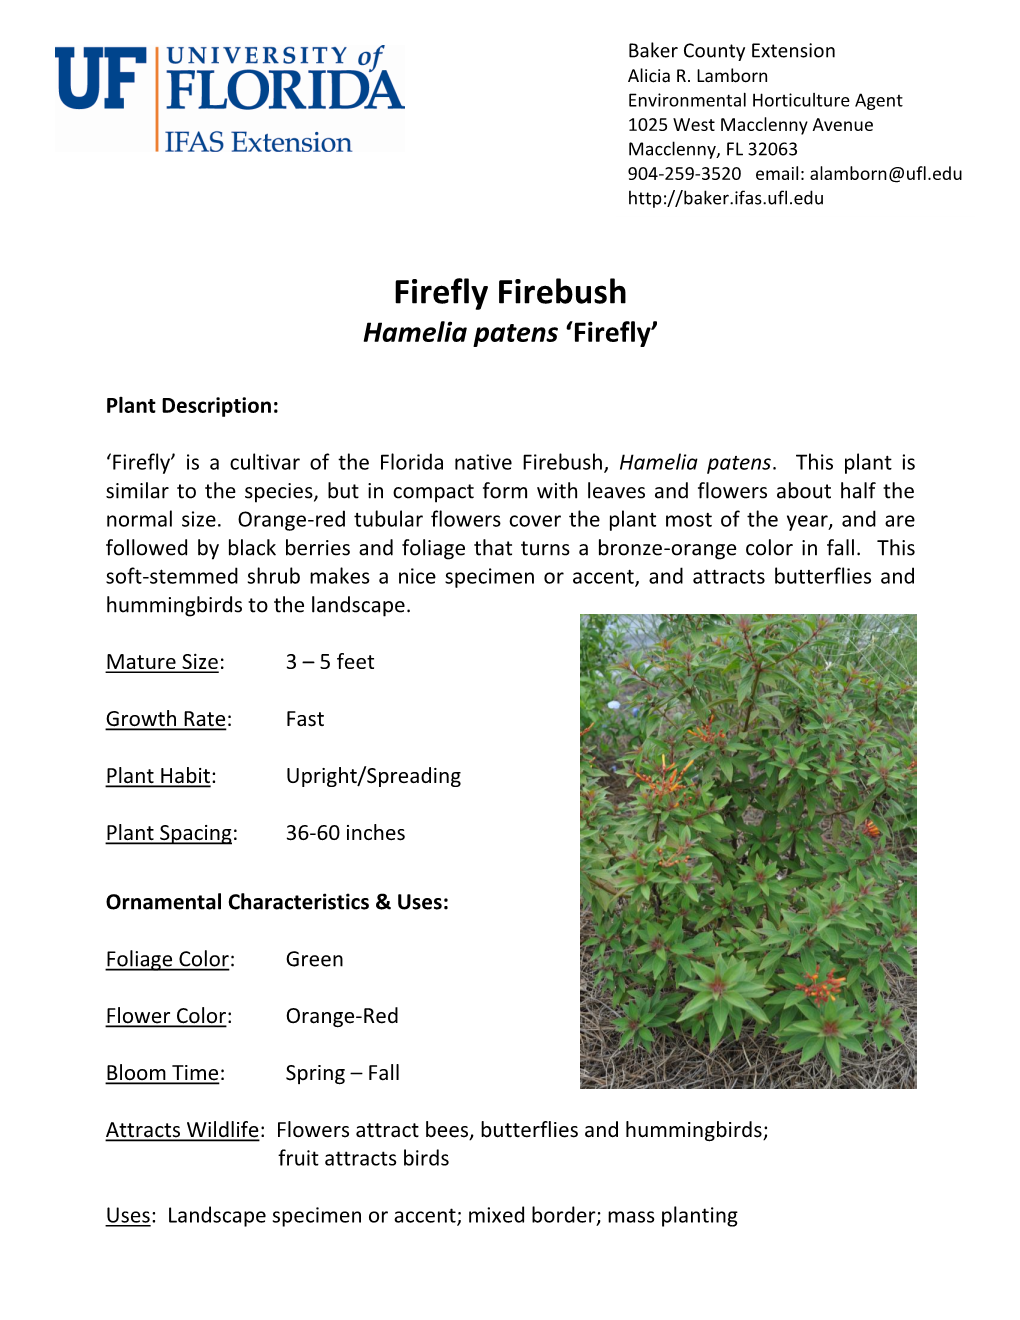 Firebush 'Firefly'